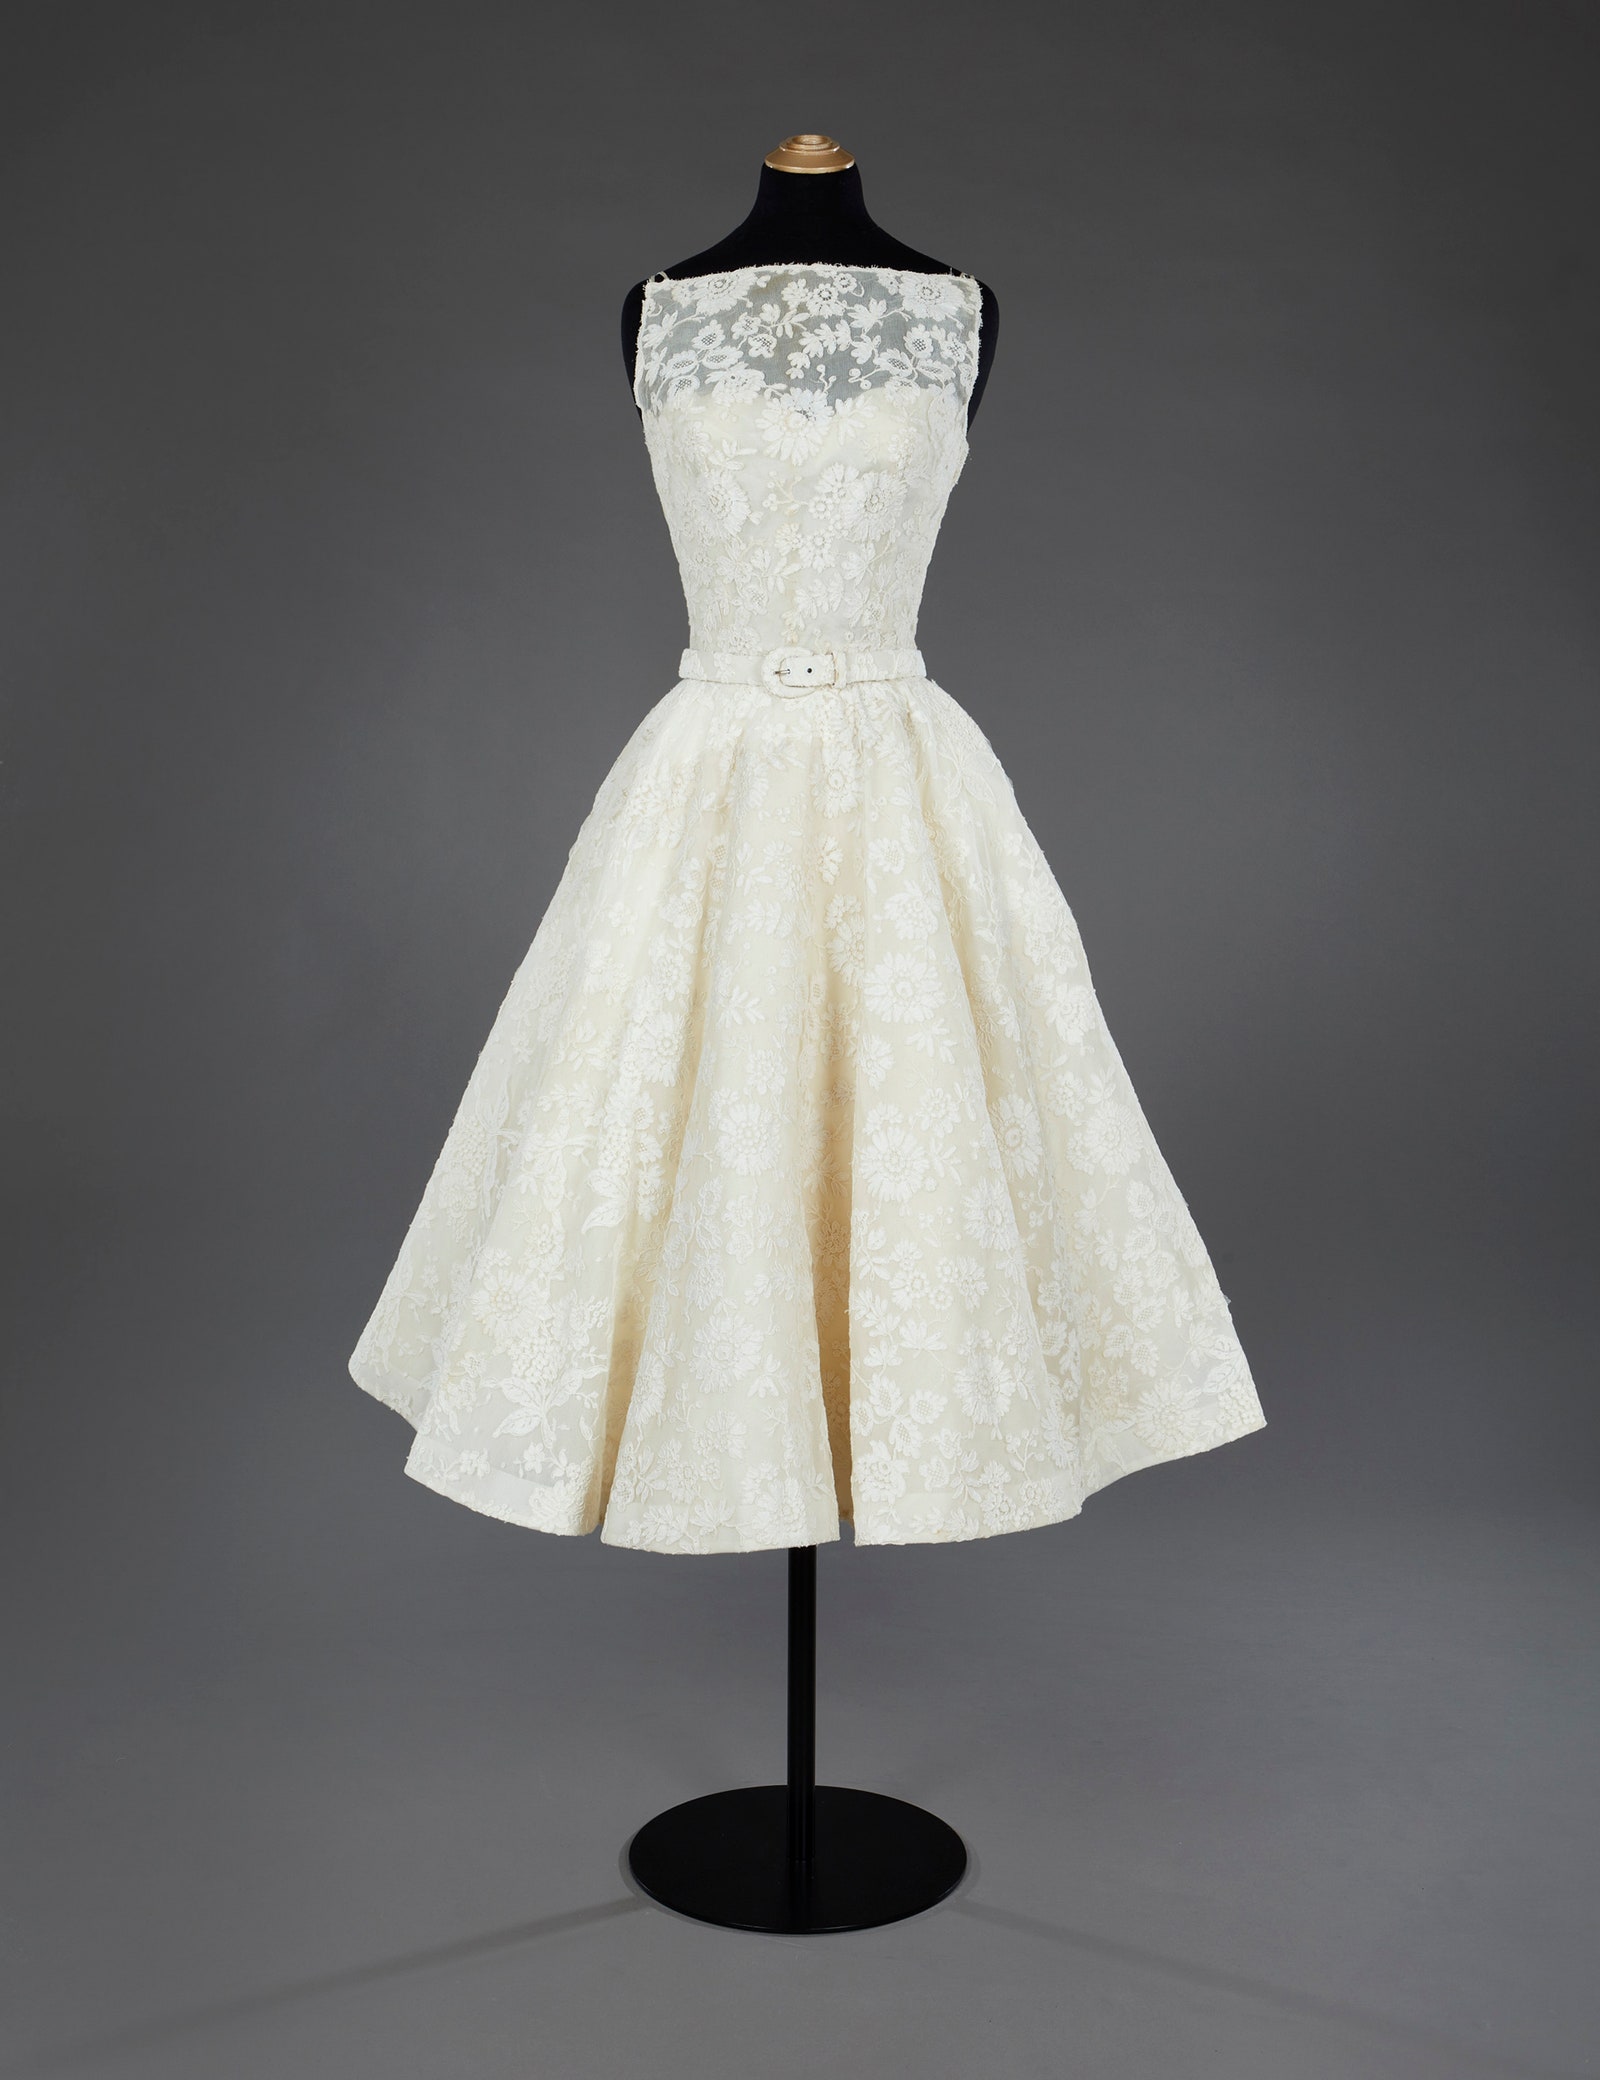 Edith Head tarafından Roman Holiday için tasarlanan ve 1954 Oscar'ları için Givenchy tarafından modifiye edilen elbise